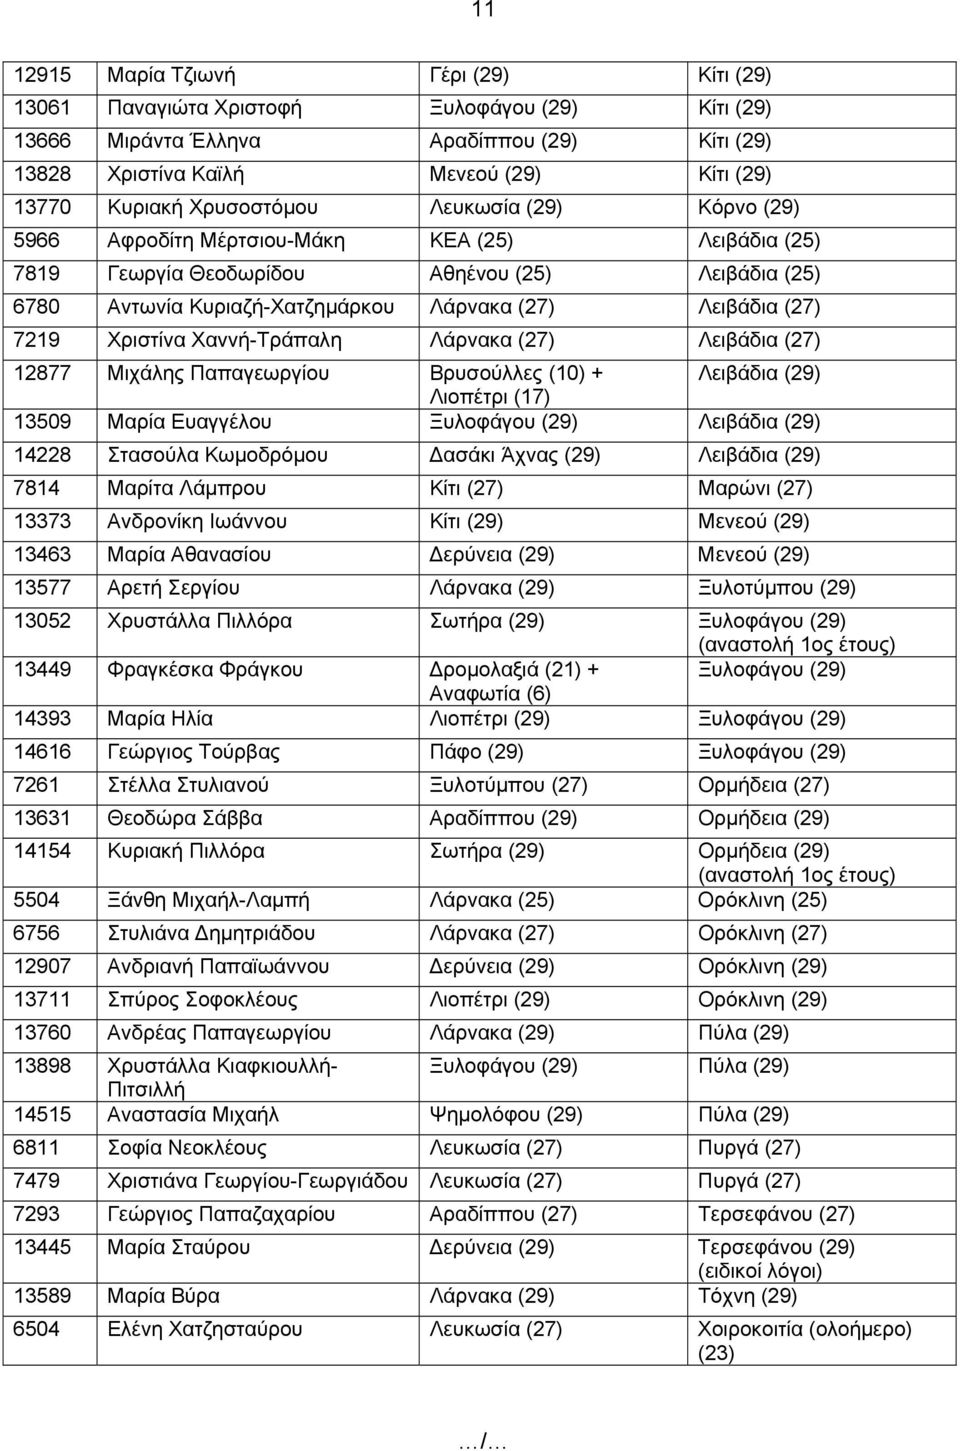 7219 Χριστίνα Χαννή-Τράπαλη Λάρνακα (27) Λειβάδια (27) 12877 Μιχάλης Παπαγεωργίου Βρυσούλλες (10) + Λειβάδια (29) Λιοπέτρι (17) 13509 Μαρία Ευαγγέλου Ξυλοφάγου (29) Λειβάδια (29) 14228 Στασούλα